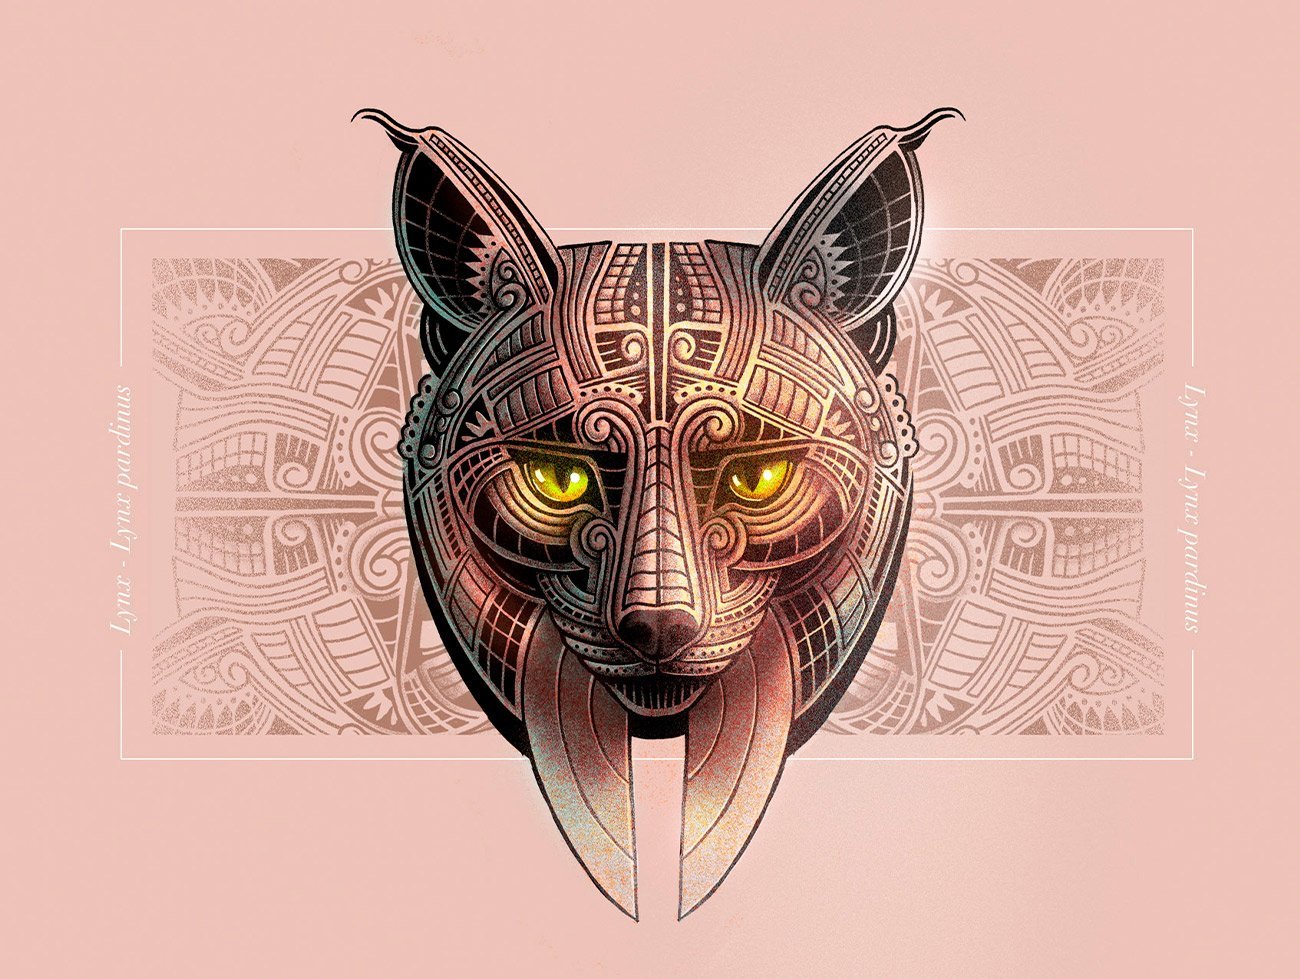 Lynx illustration by Sr.Reny